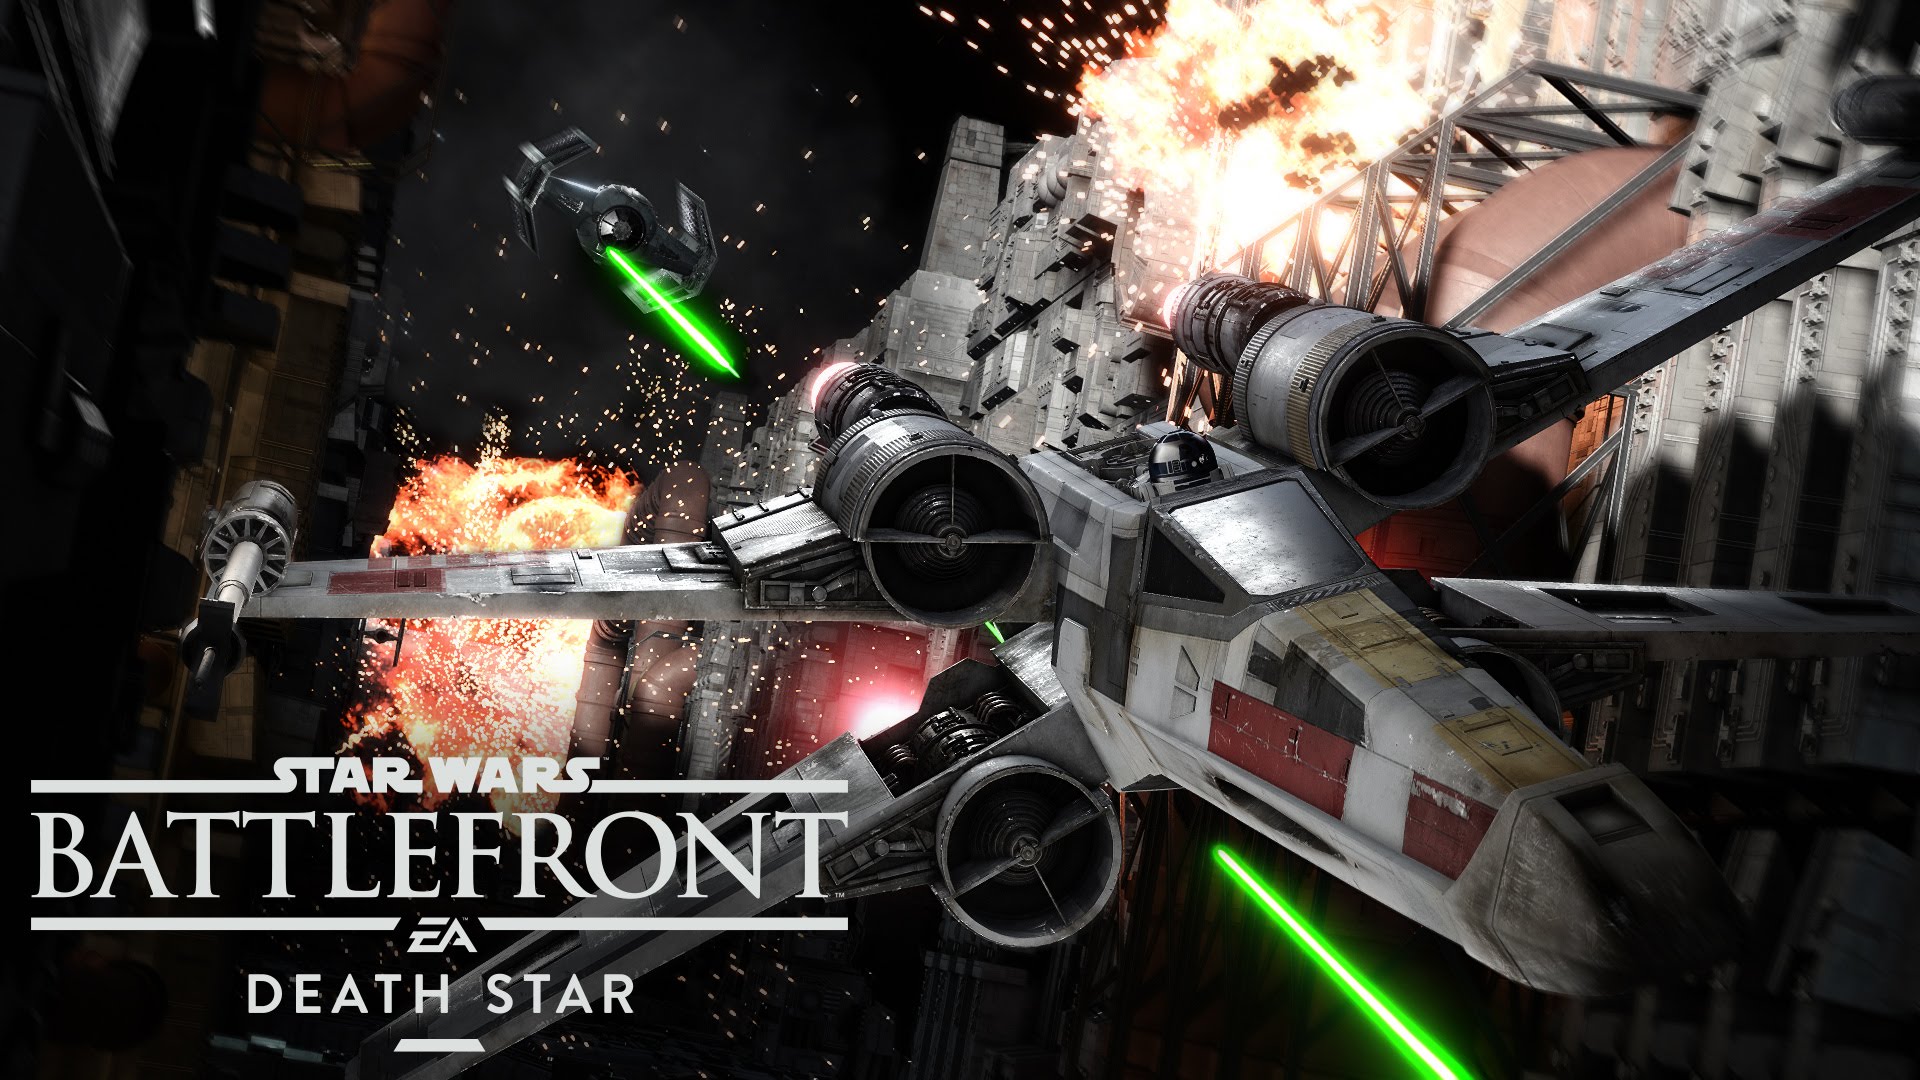 Star Wars Battlefront: Death Star Launch Trailer